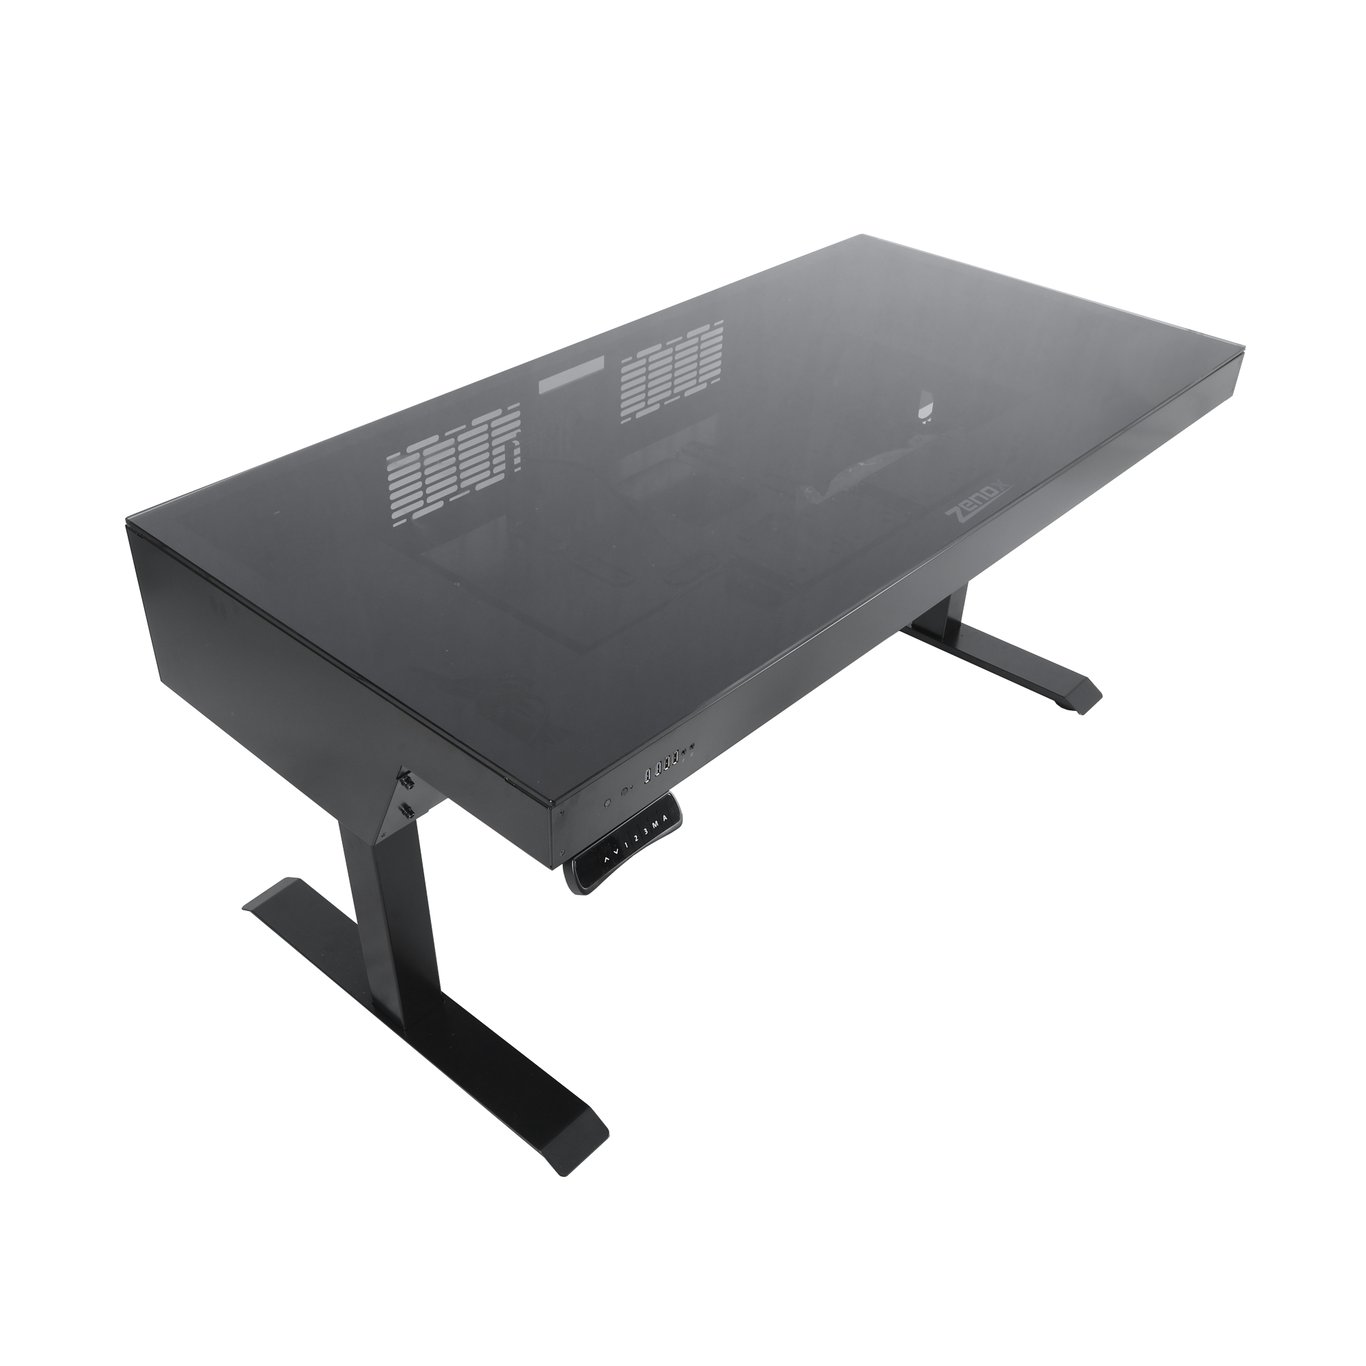 Zenox Zeus Pro Gaming Desk V2 電競枱 (可調整高度) ATX 機箱 - 1.5米 (組裝需另外報價)